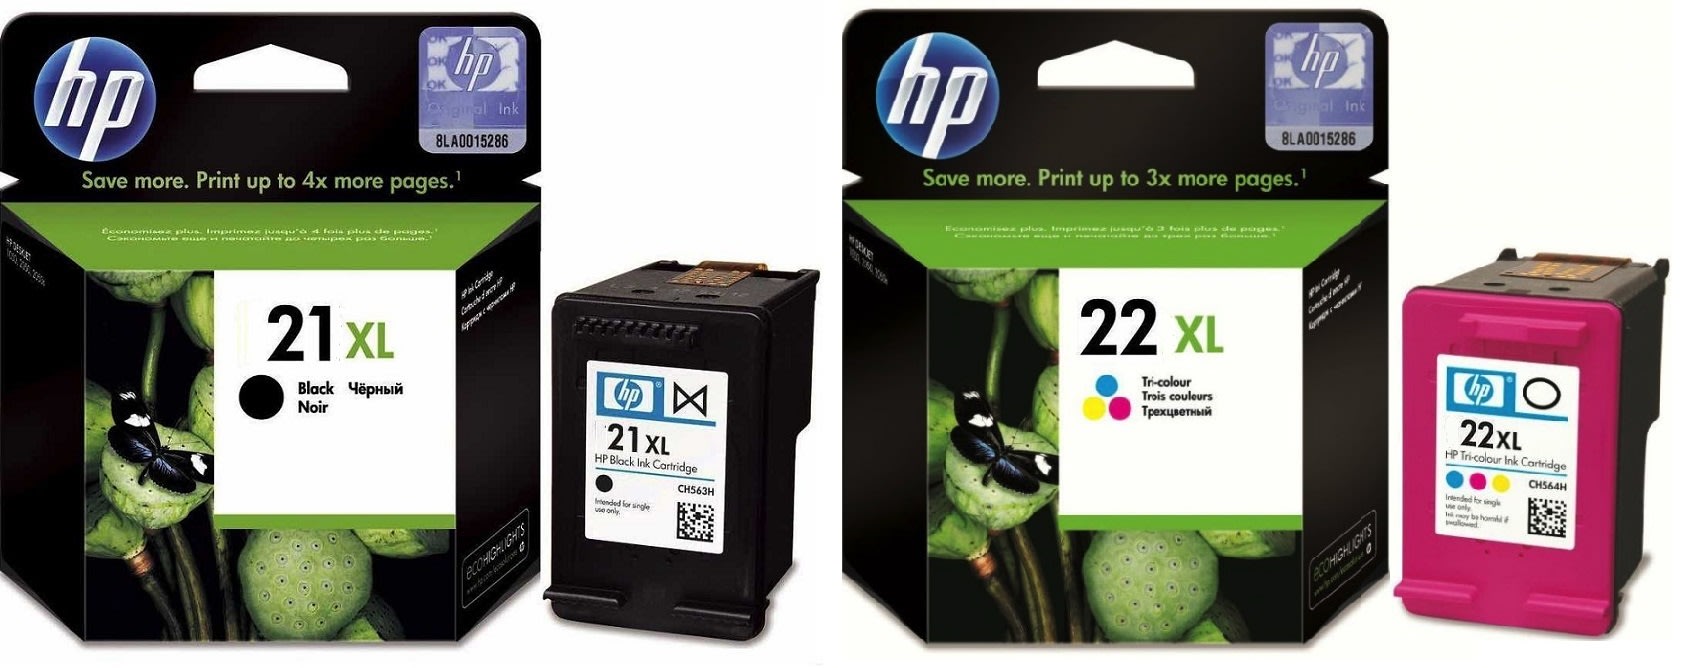 Картриджи hp 21XL 22XL для HP Deskjet D1560. Купить комплект оригинальных чернил.